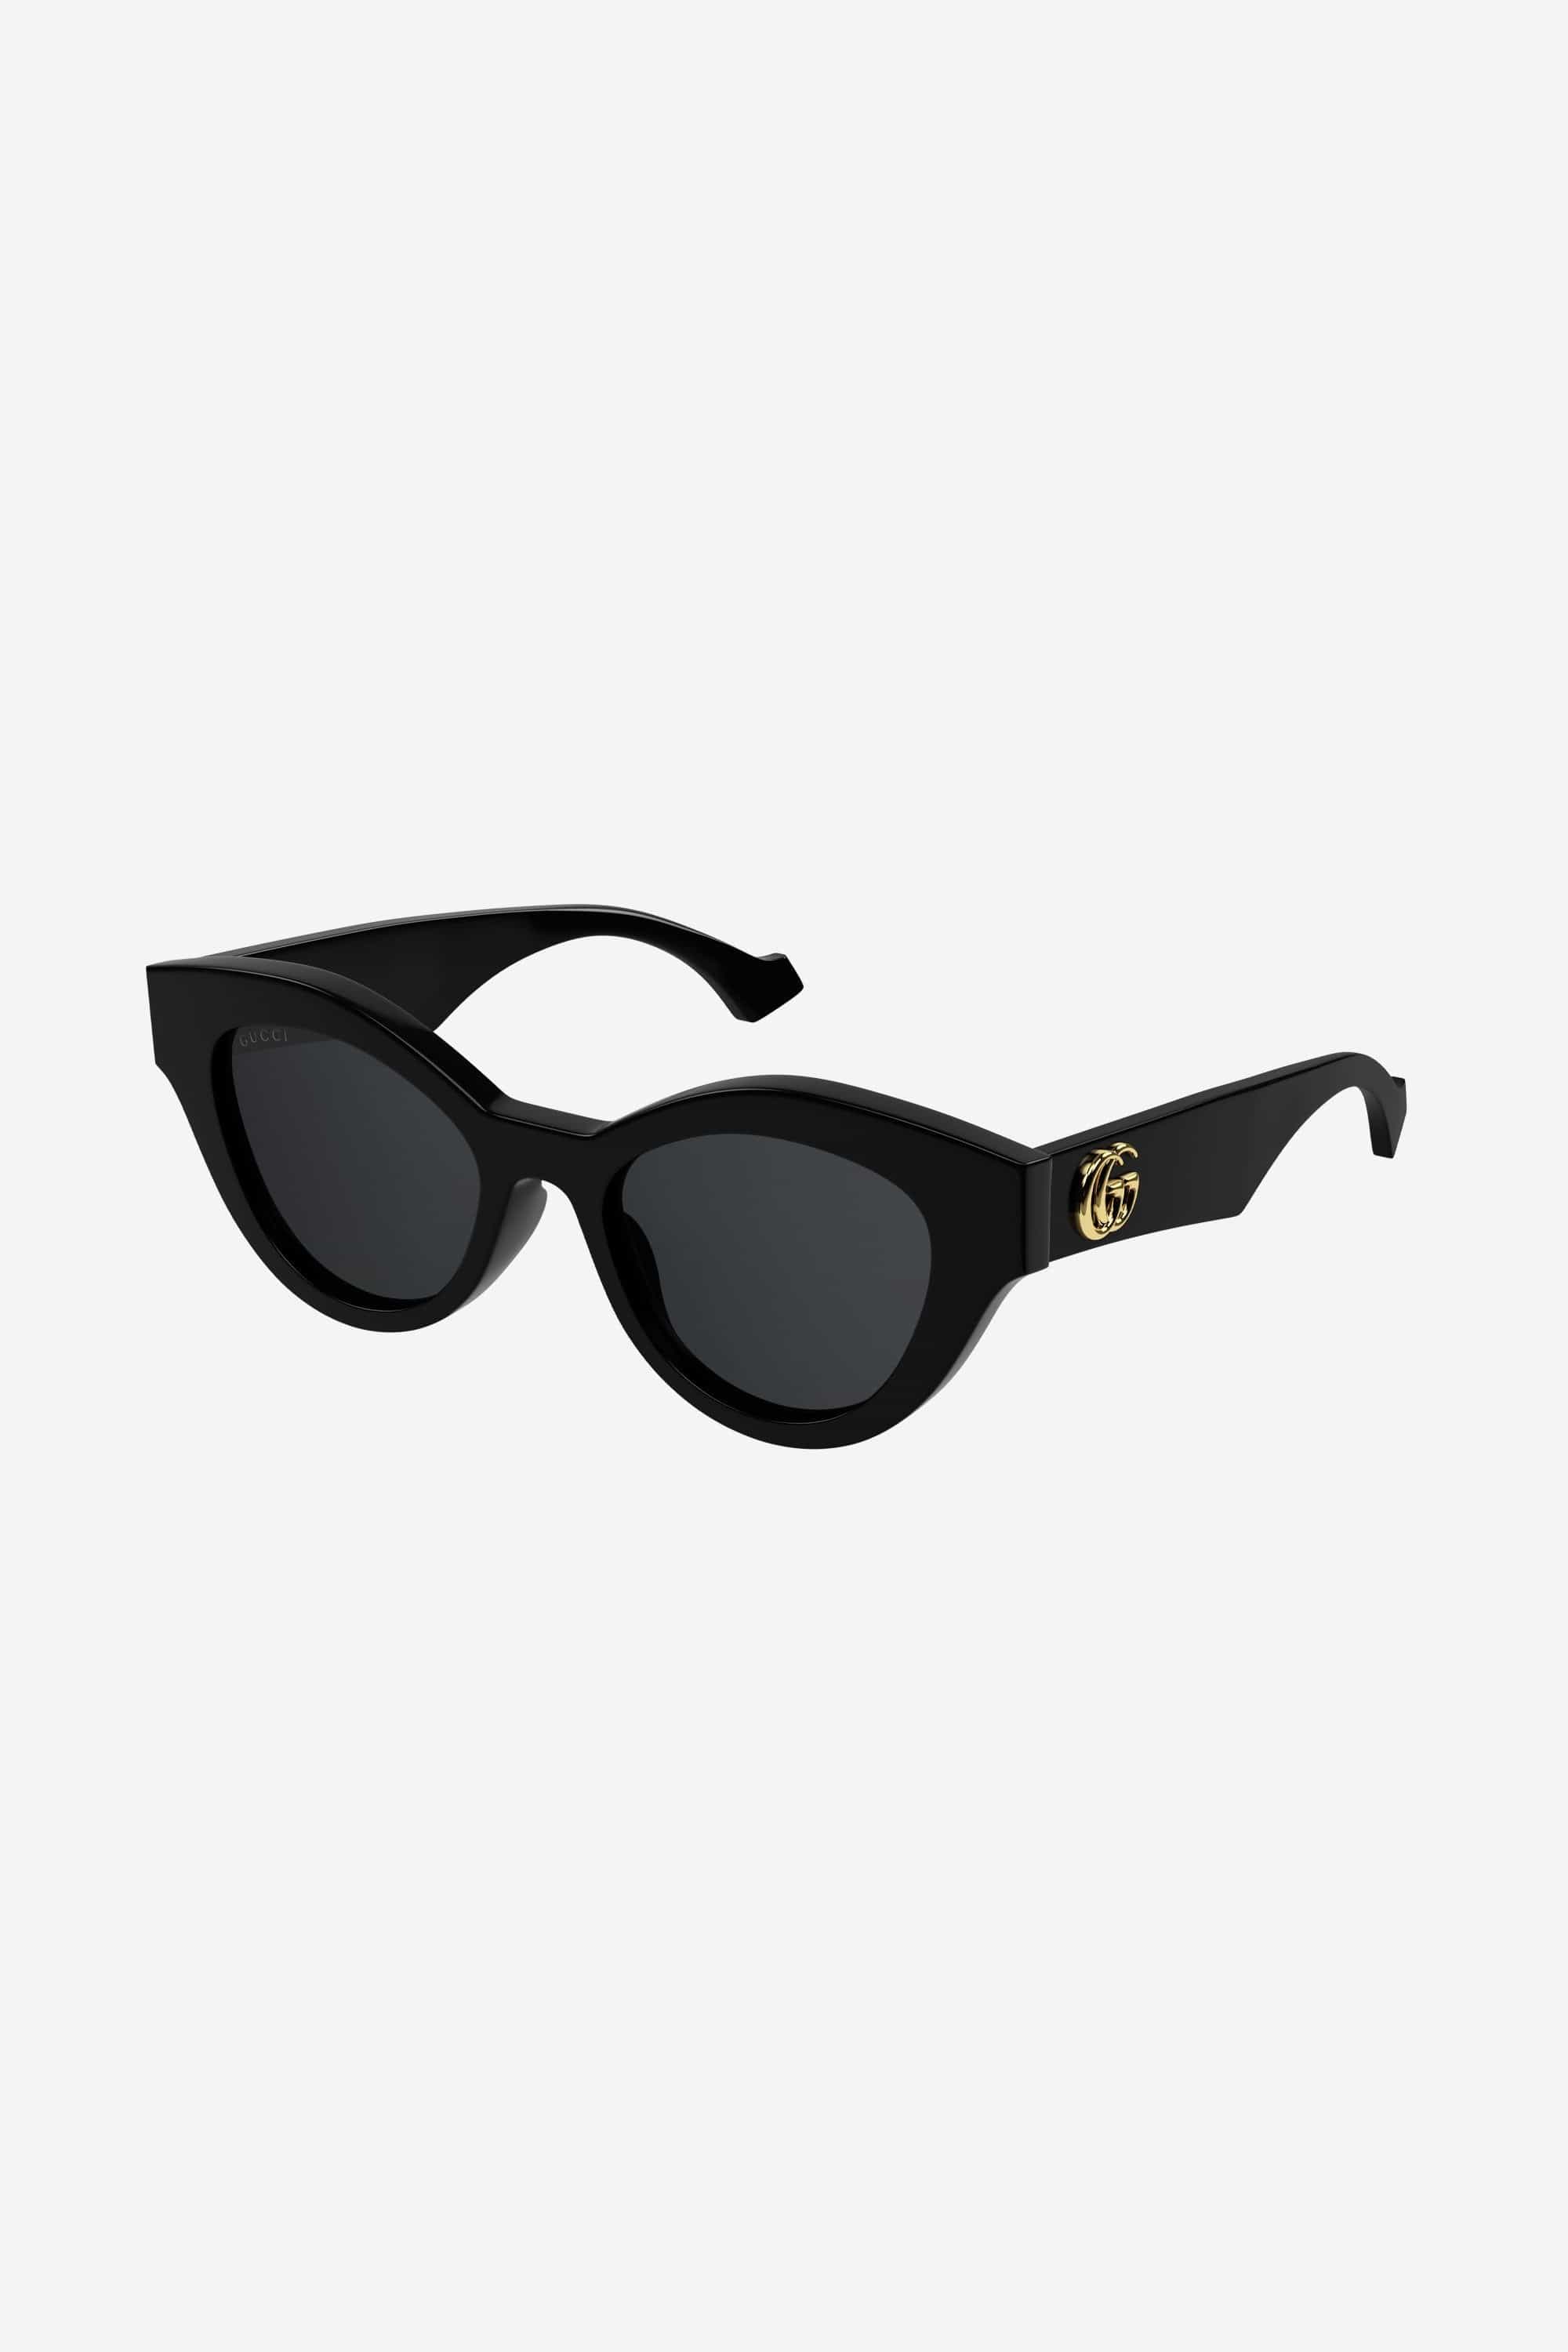 Gucci cat eye black sunglasses with GG logo - Eyewear Club